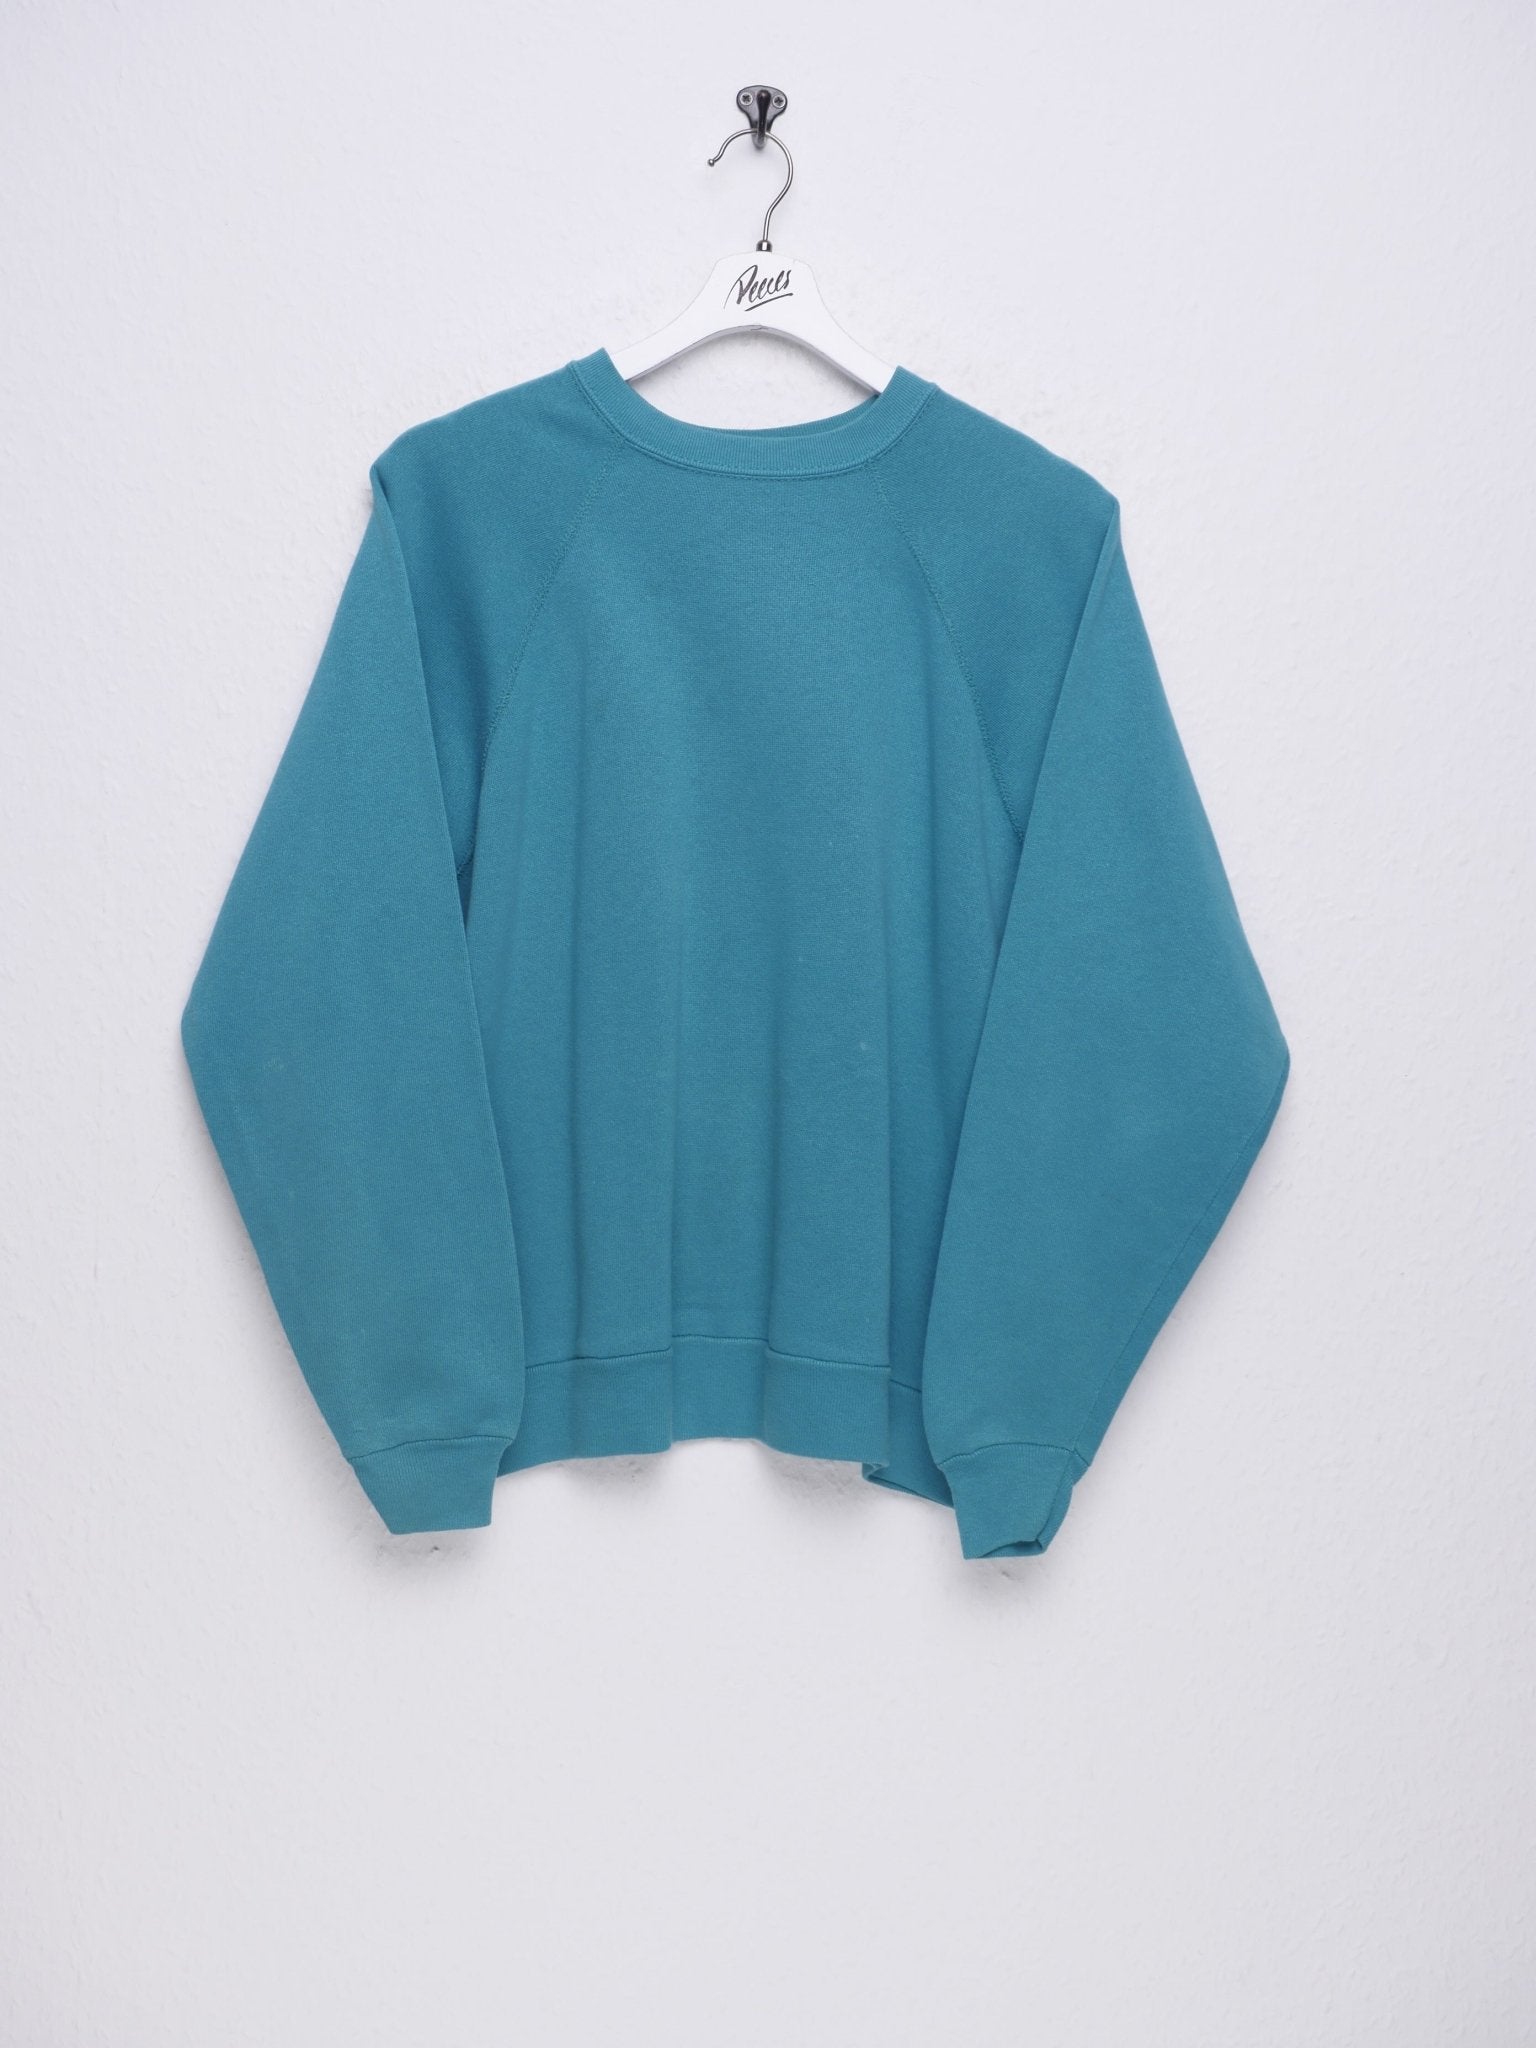 Plain basic turquoise Sweater - Peeces